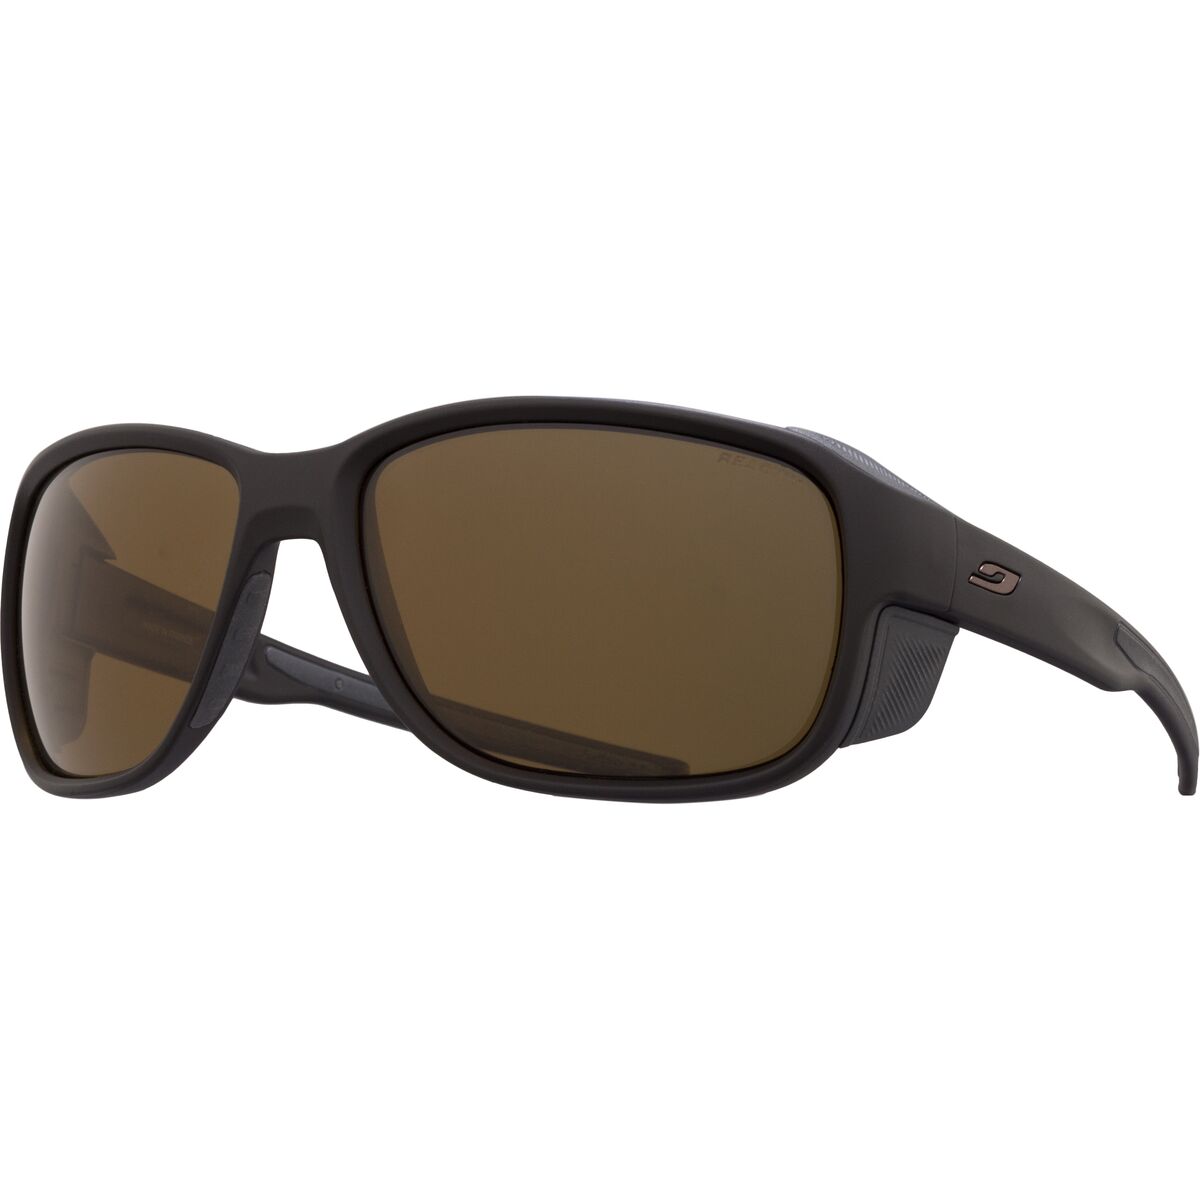 Julbo Montebianco 2 Polarized Sunglasses - Accessories